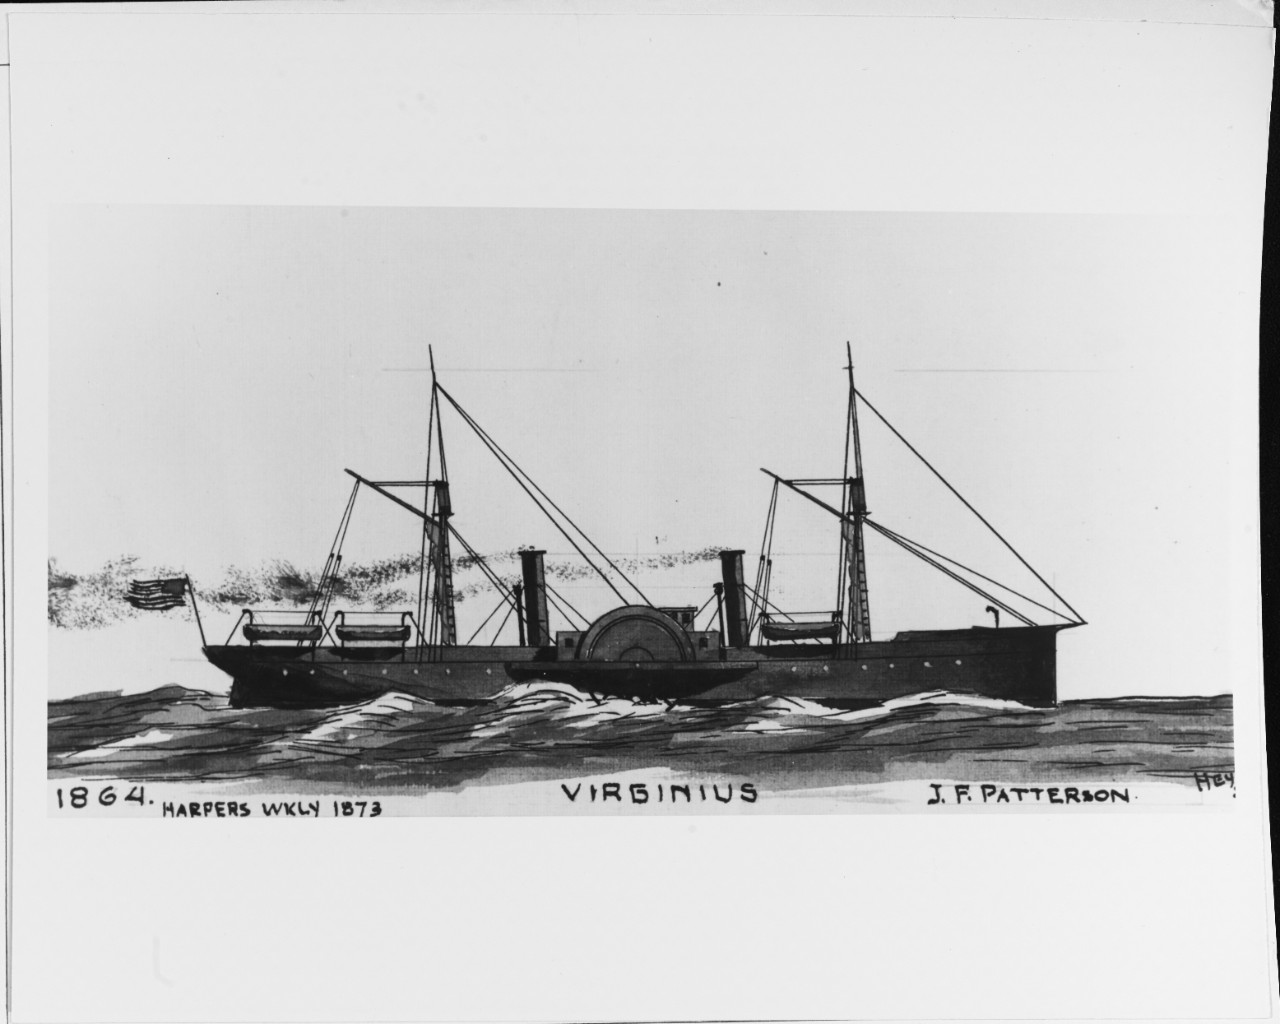 VIRGINIUS (Merchant steamer, 1864-1873)